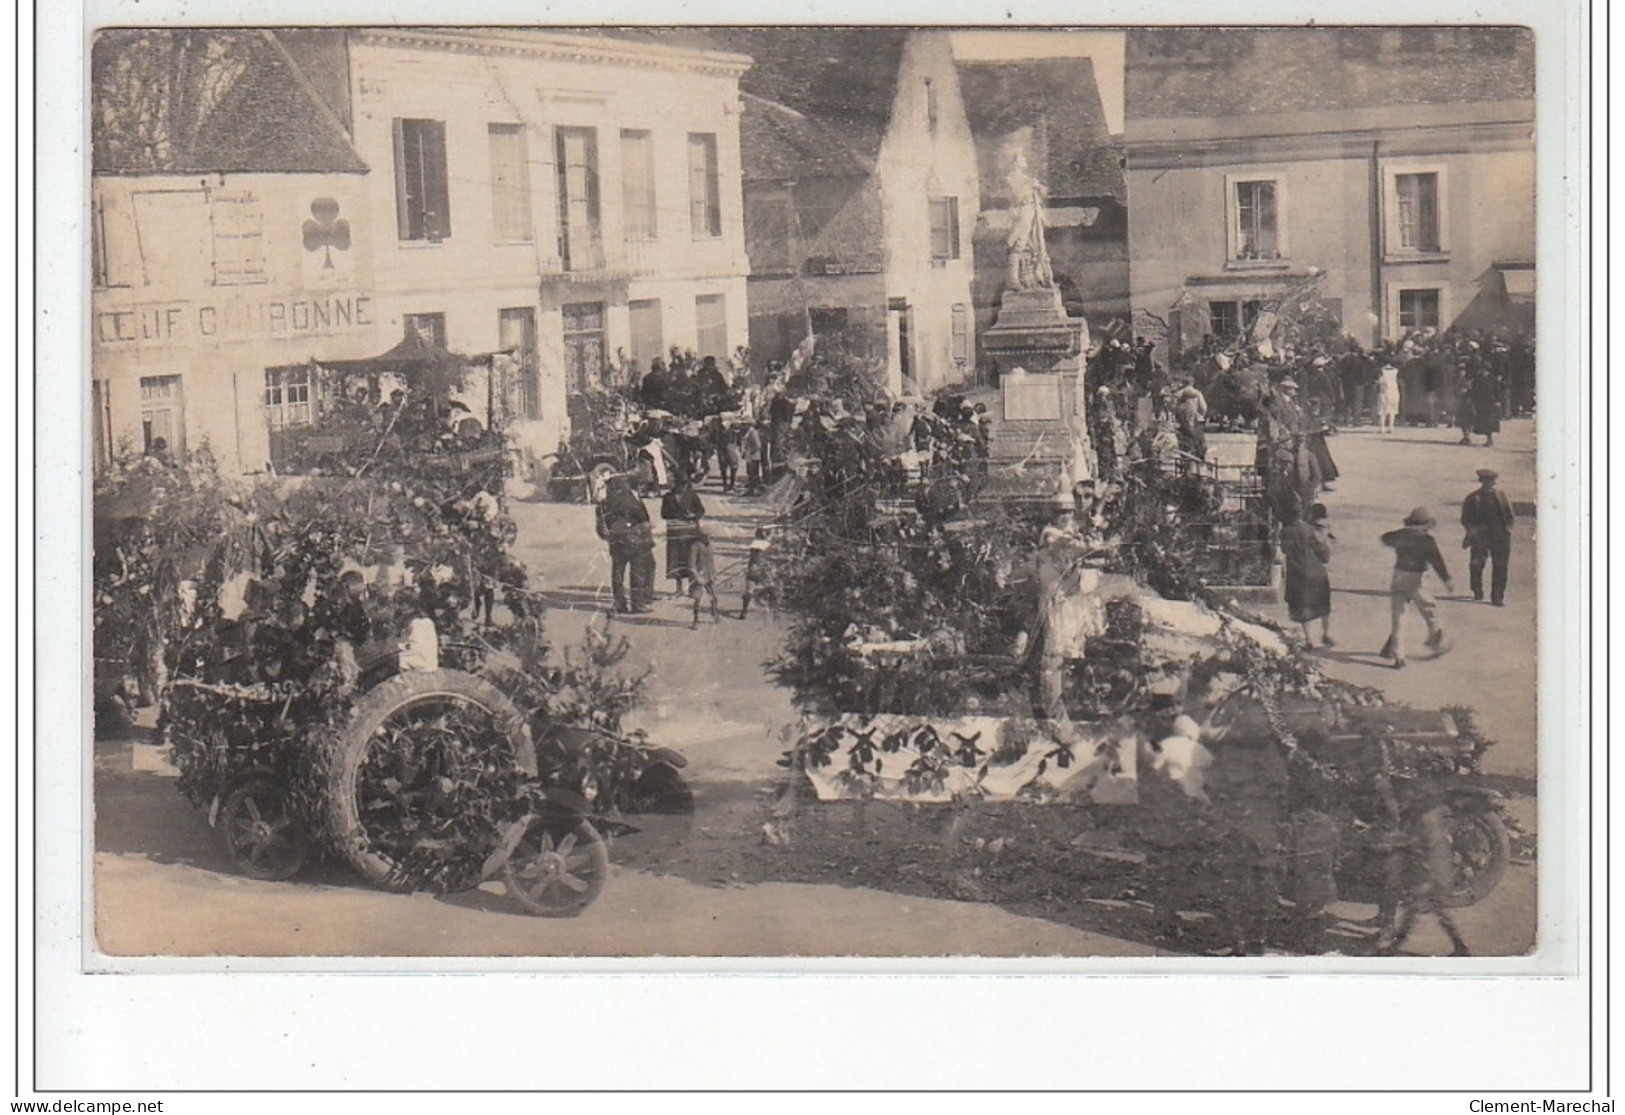 MEZIERES EN BRENNE : lot de 6 cartes photos de la cavalcade en 1925ou1926 - très bon état